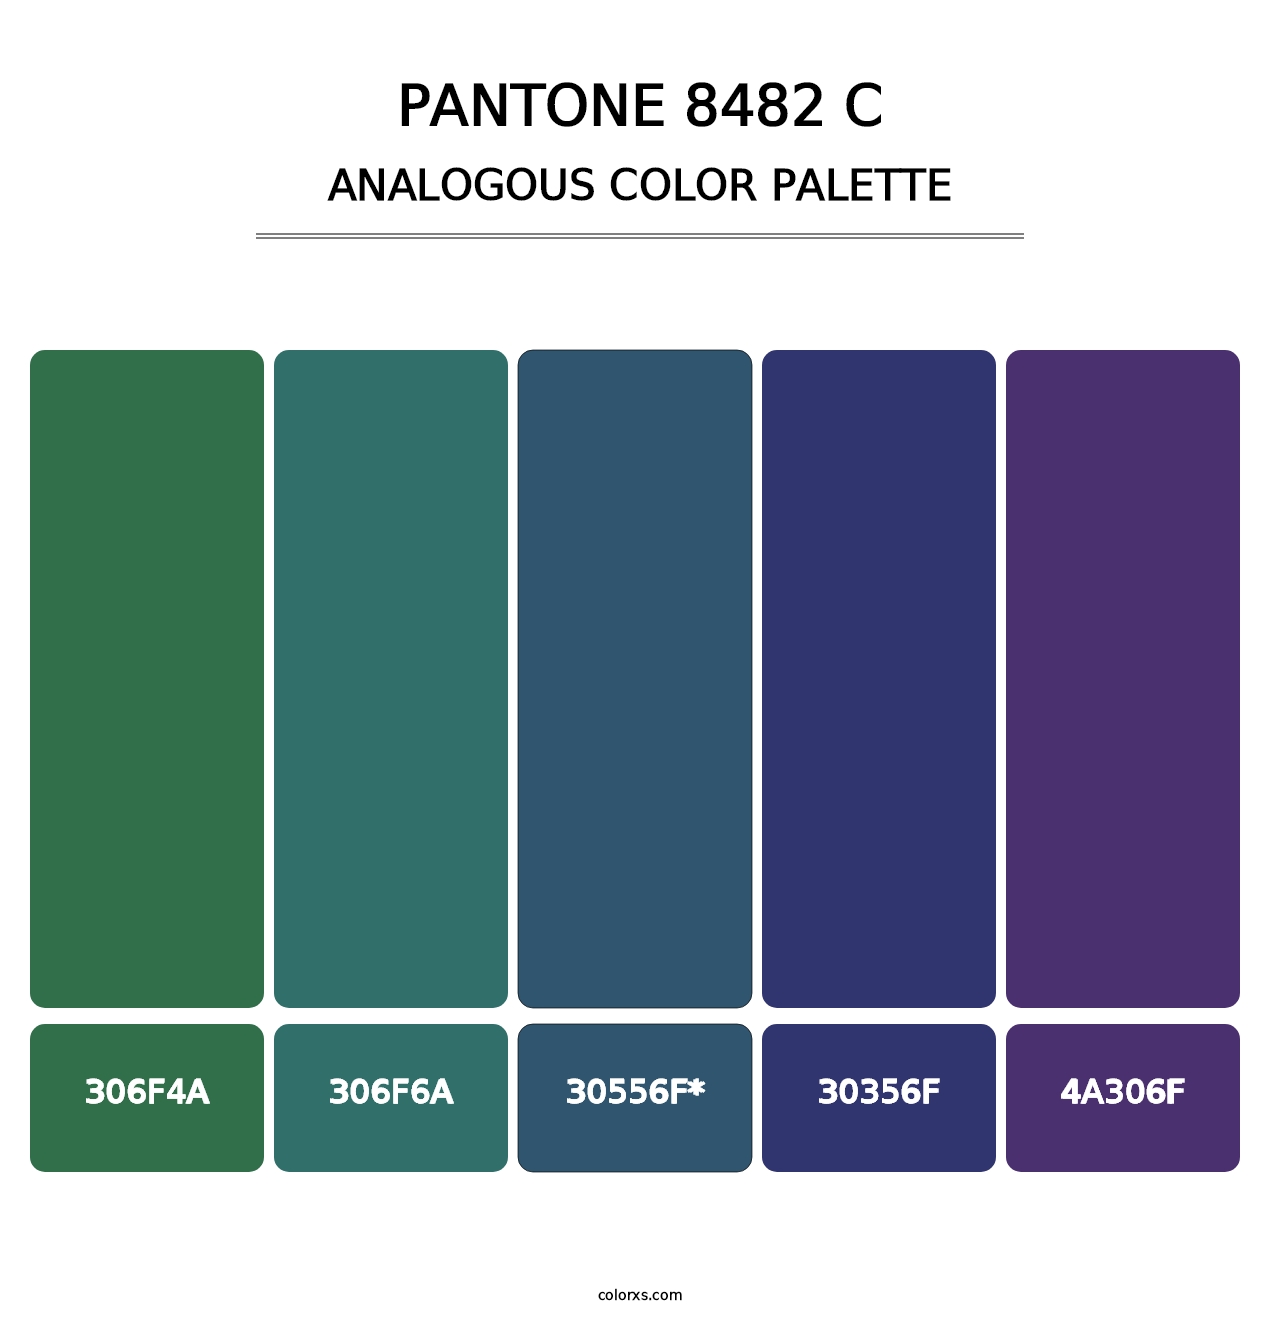 PANTONE 8482 C - Analogous Color Palette